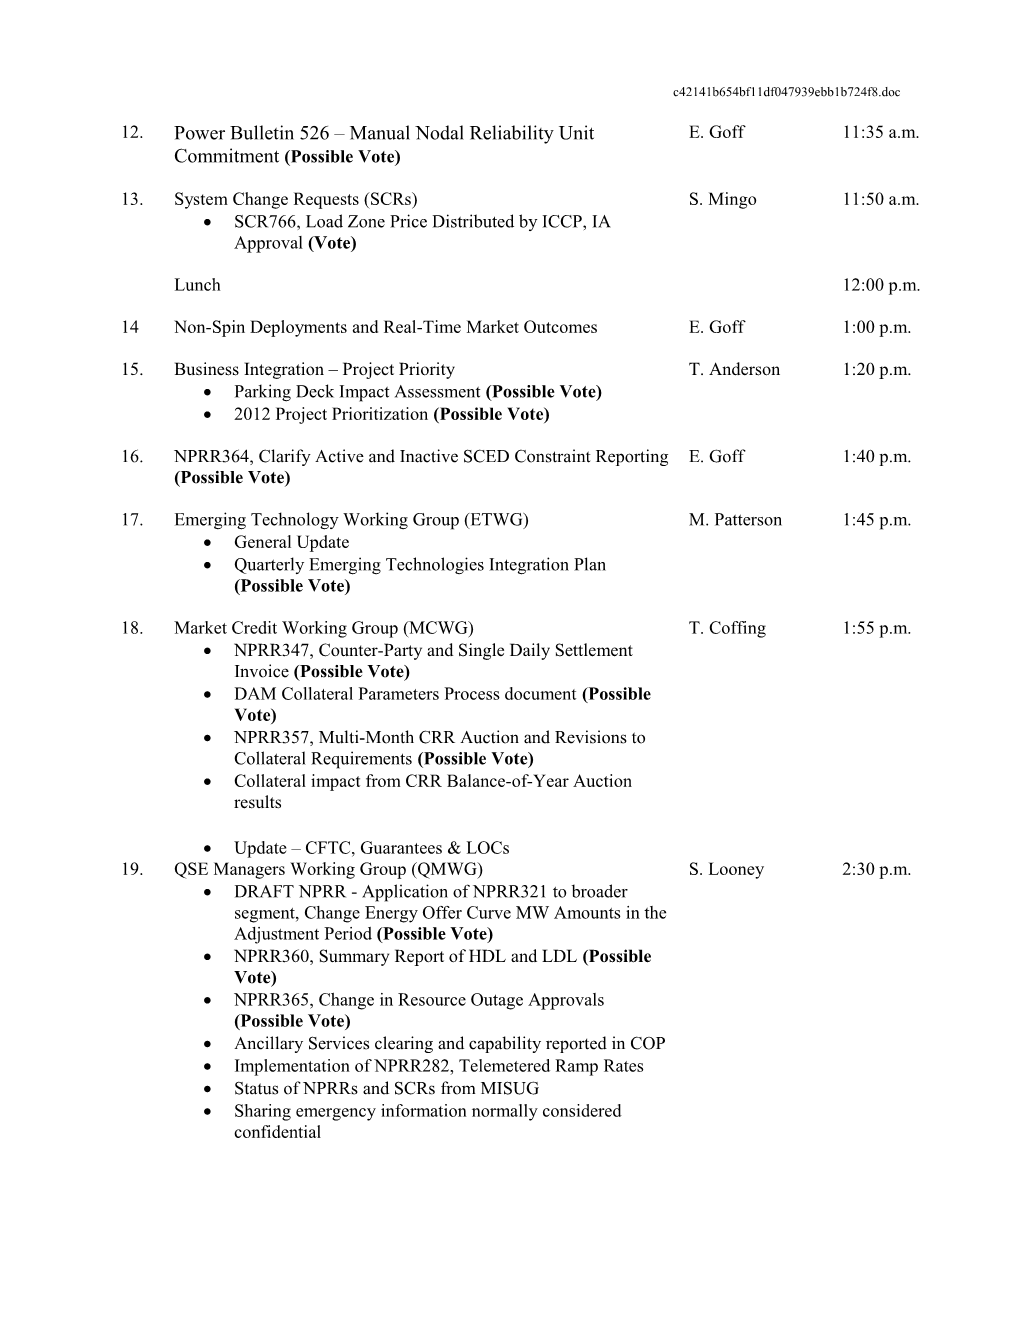 TPTF Draft Agenda: January 12 13, 2009